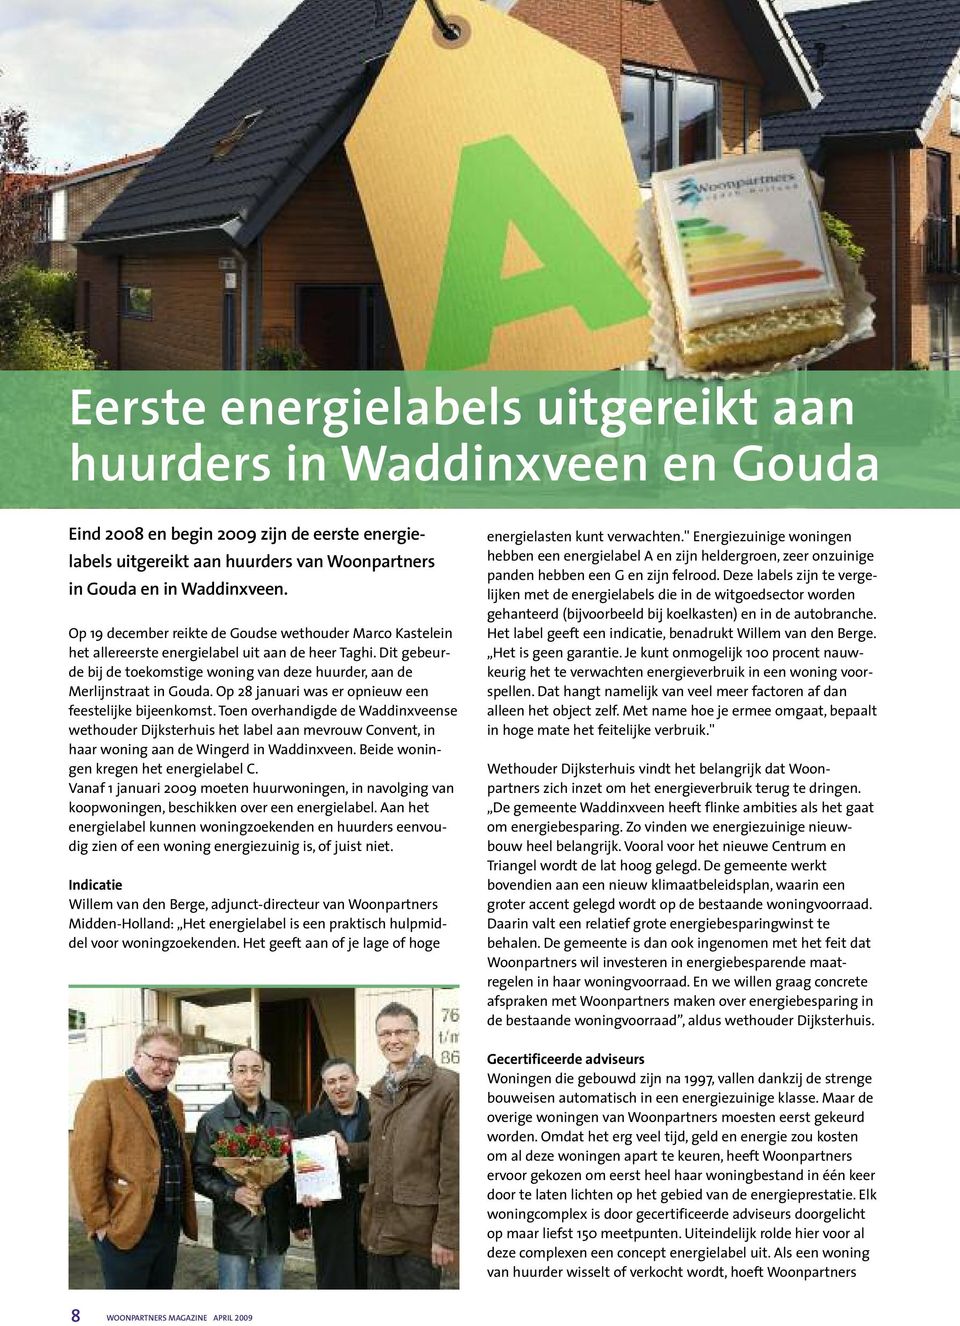 Op 28 januari was er opnieuw een feestelijke bijeenkomst. Toen overhandigde de Waddinxveense wethouder Dijksterhuis het label aan mevrouw Convent, in haar woning aan de Wingerd in Waddinxveen.